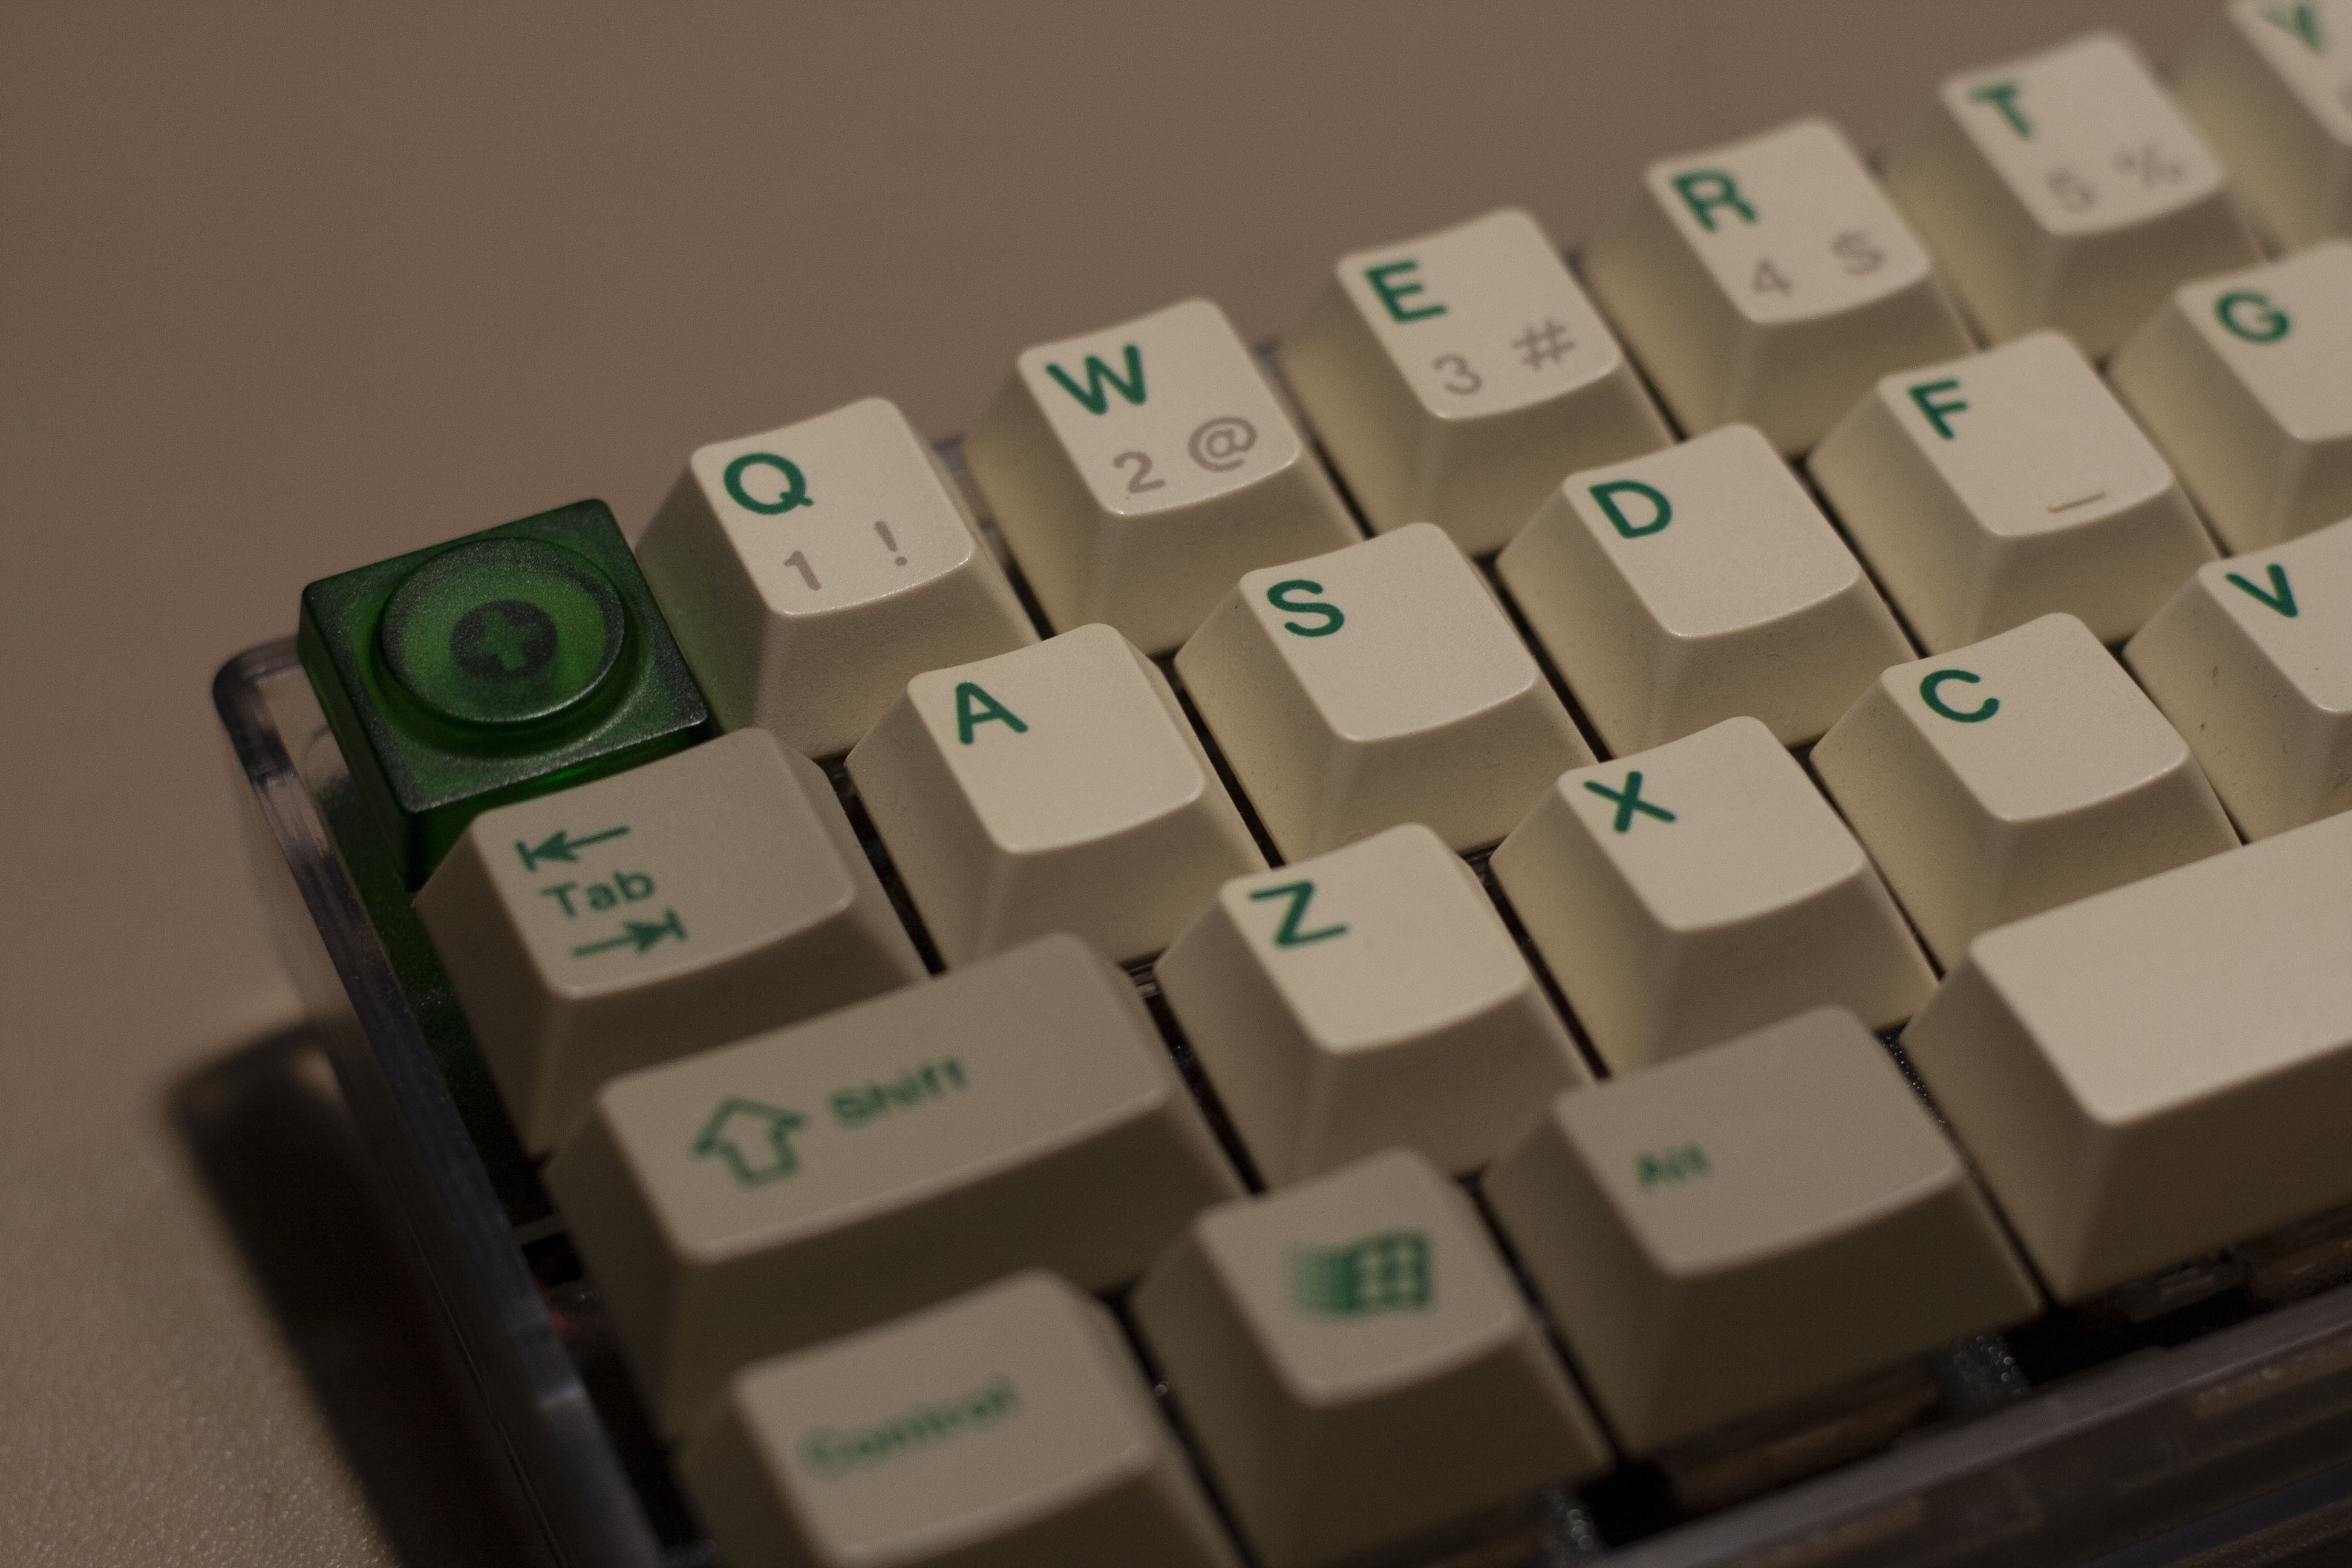 为了记住按键的内容，我们可以定制，如这个键盘的qwer行